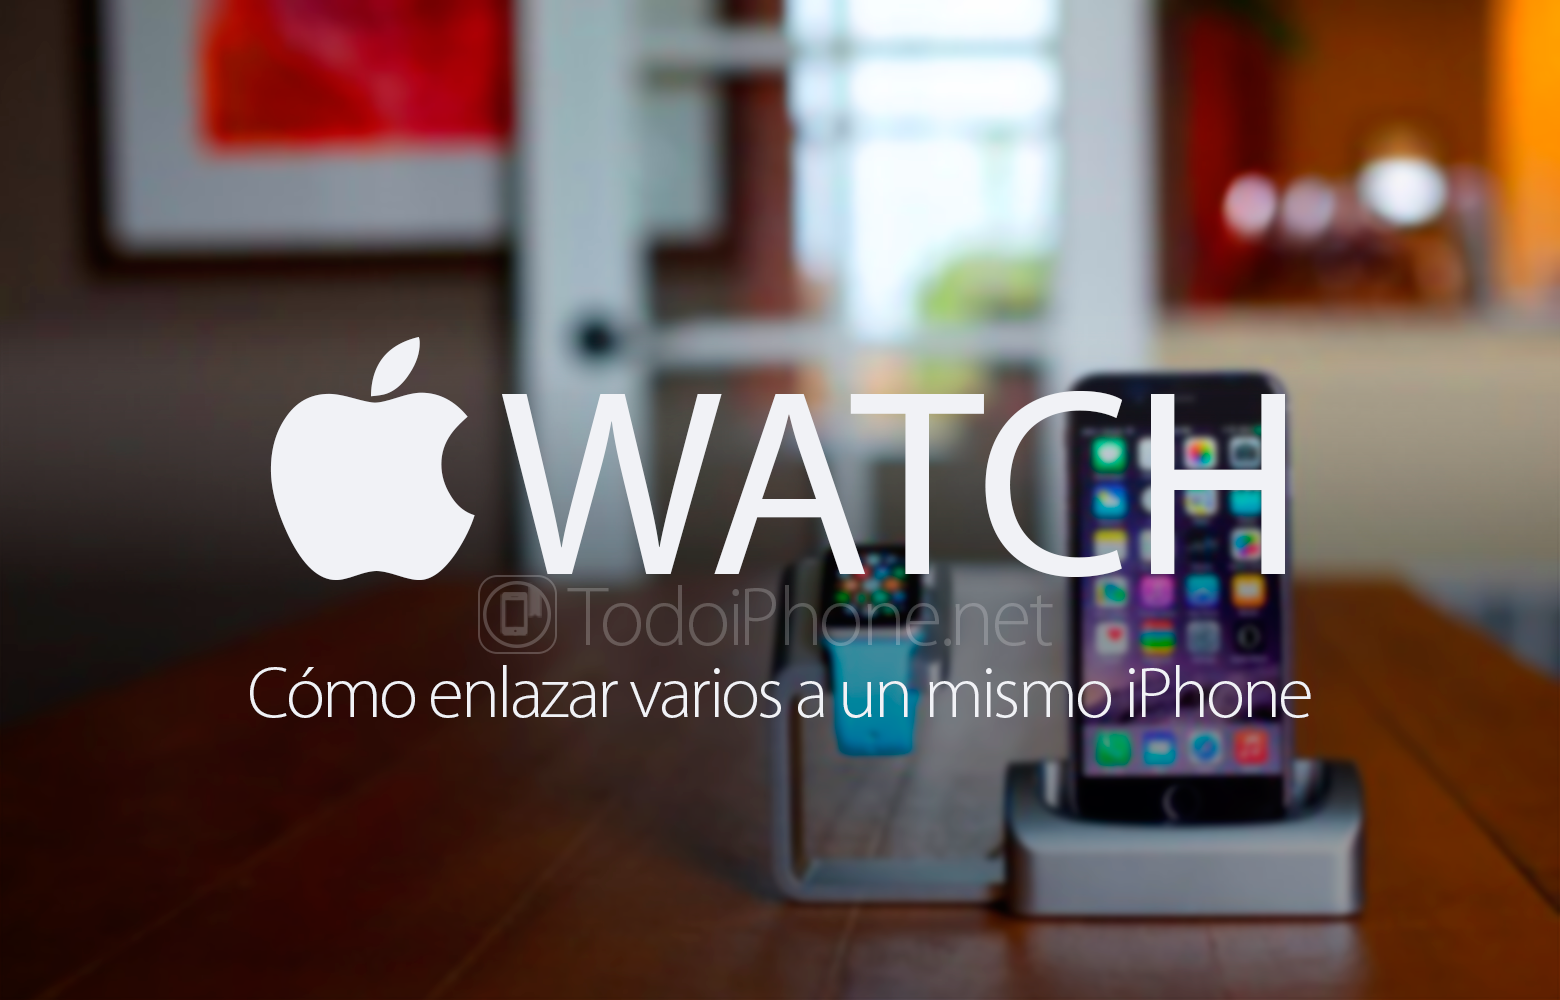 Como enlazar apple watch con iphone 5s